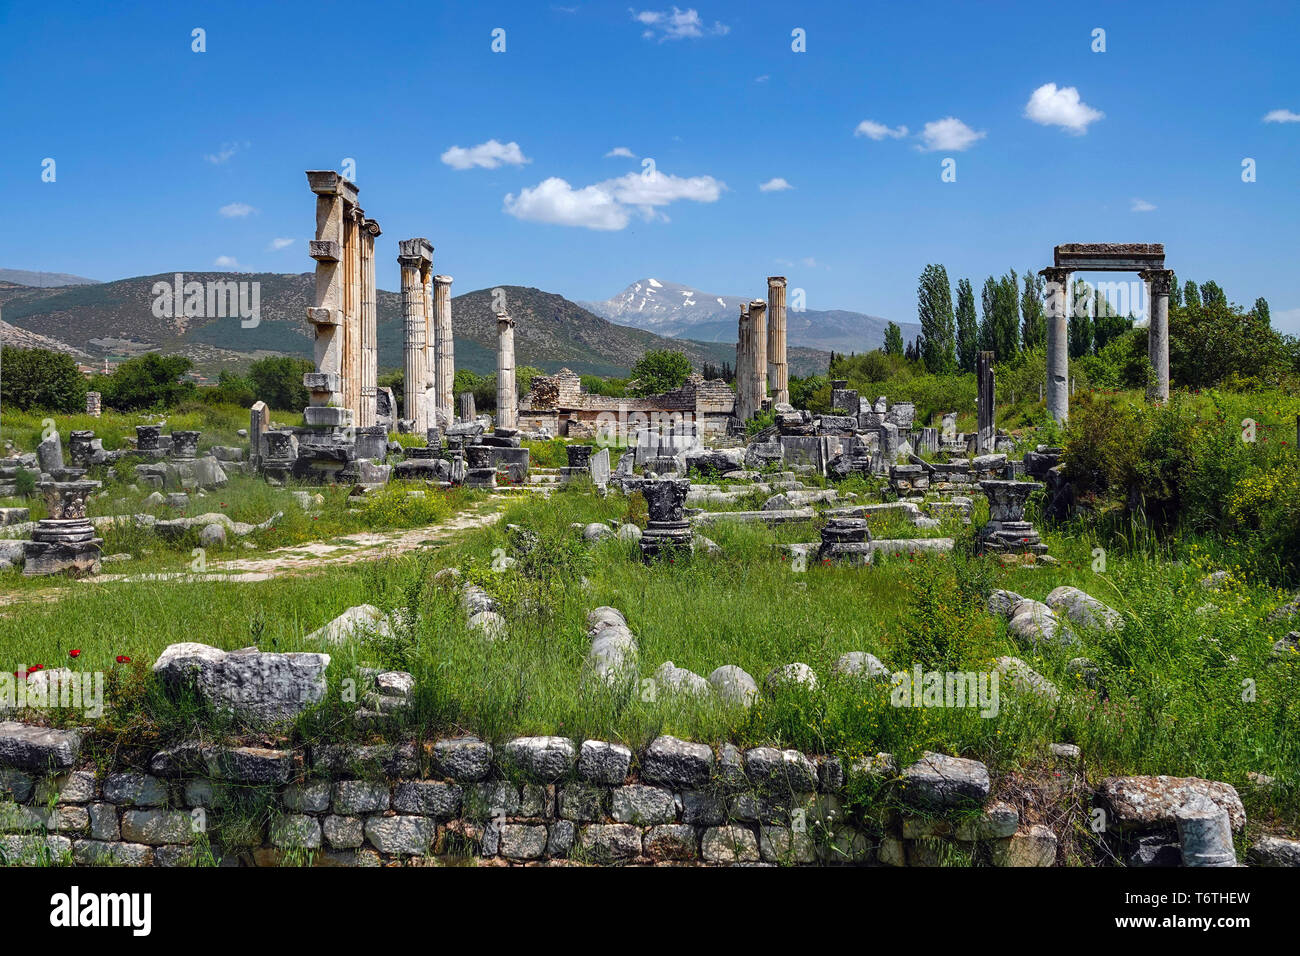 Temple d'Aphrodite Aphrodisias, vestiges romains, site du patrimoine mondial de l'UNESCO, l'ouest de la Turquie Banque D'Images